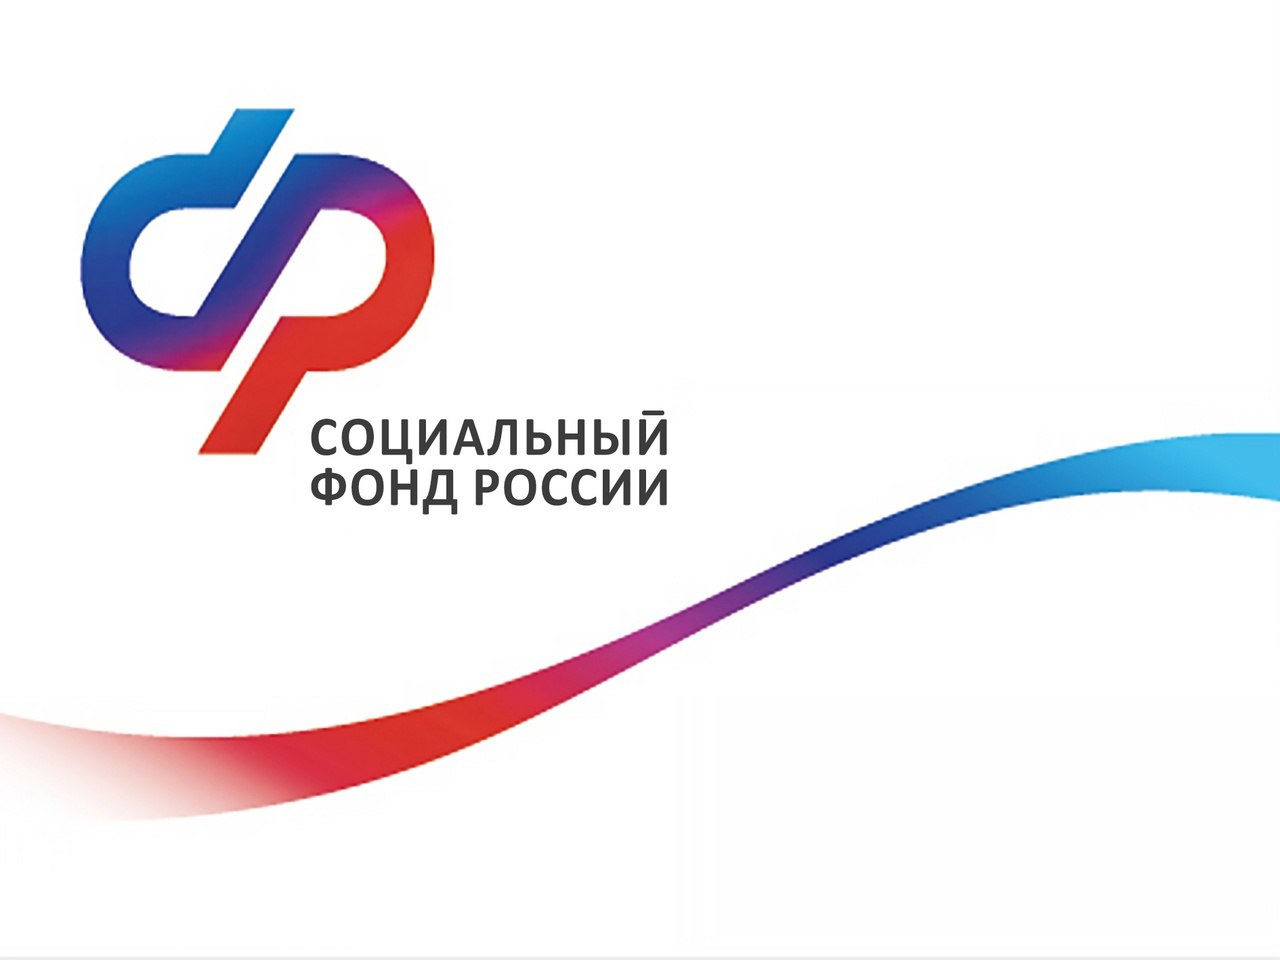 1700  жителей Кировской области получили технические средства реабилитации с помощью электронных сертификатов.